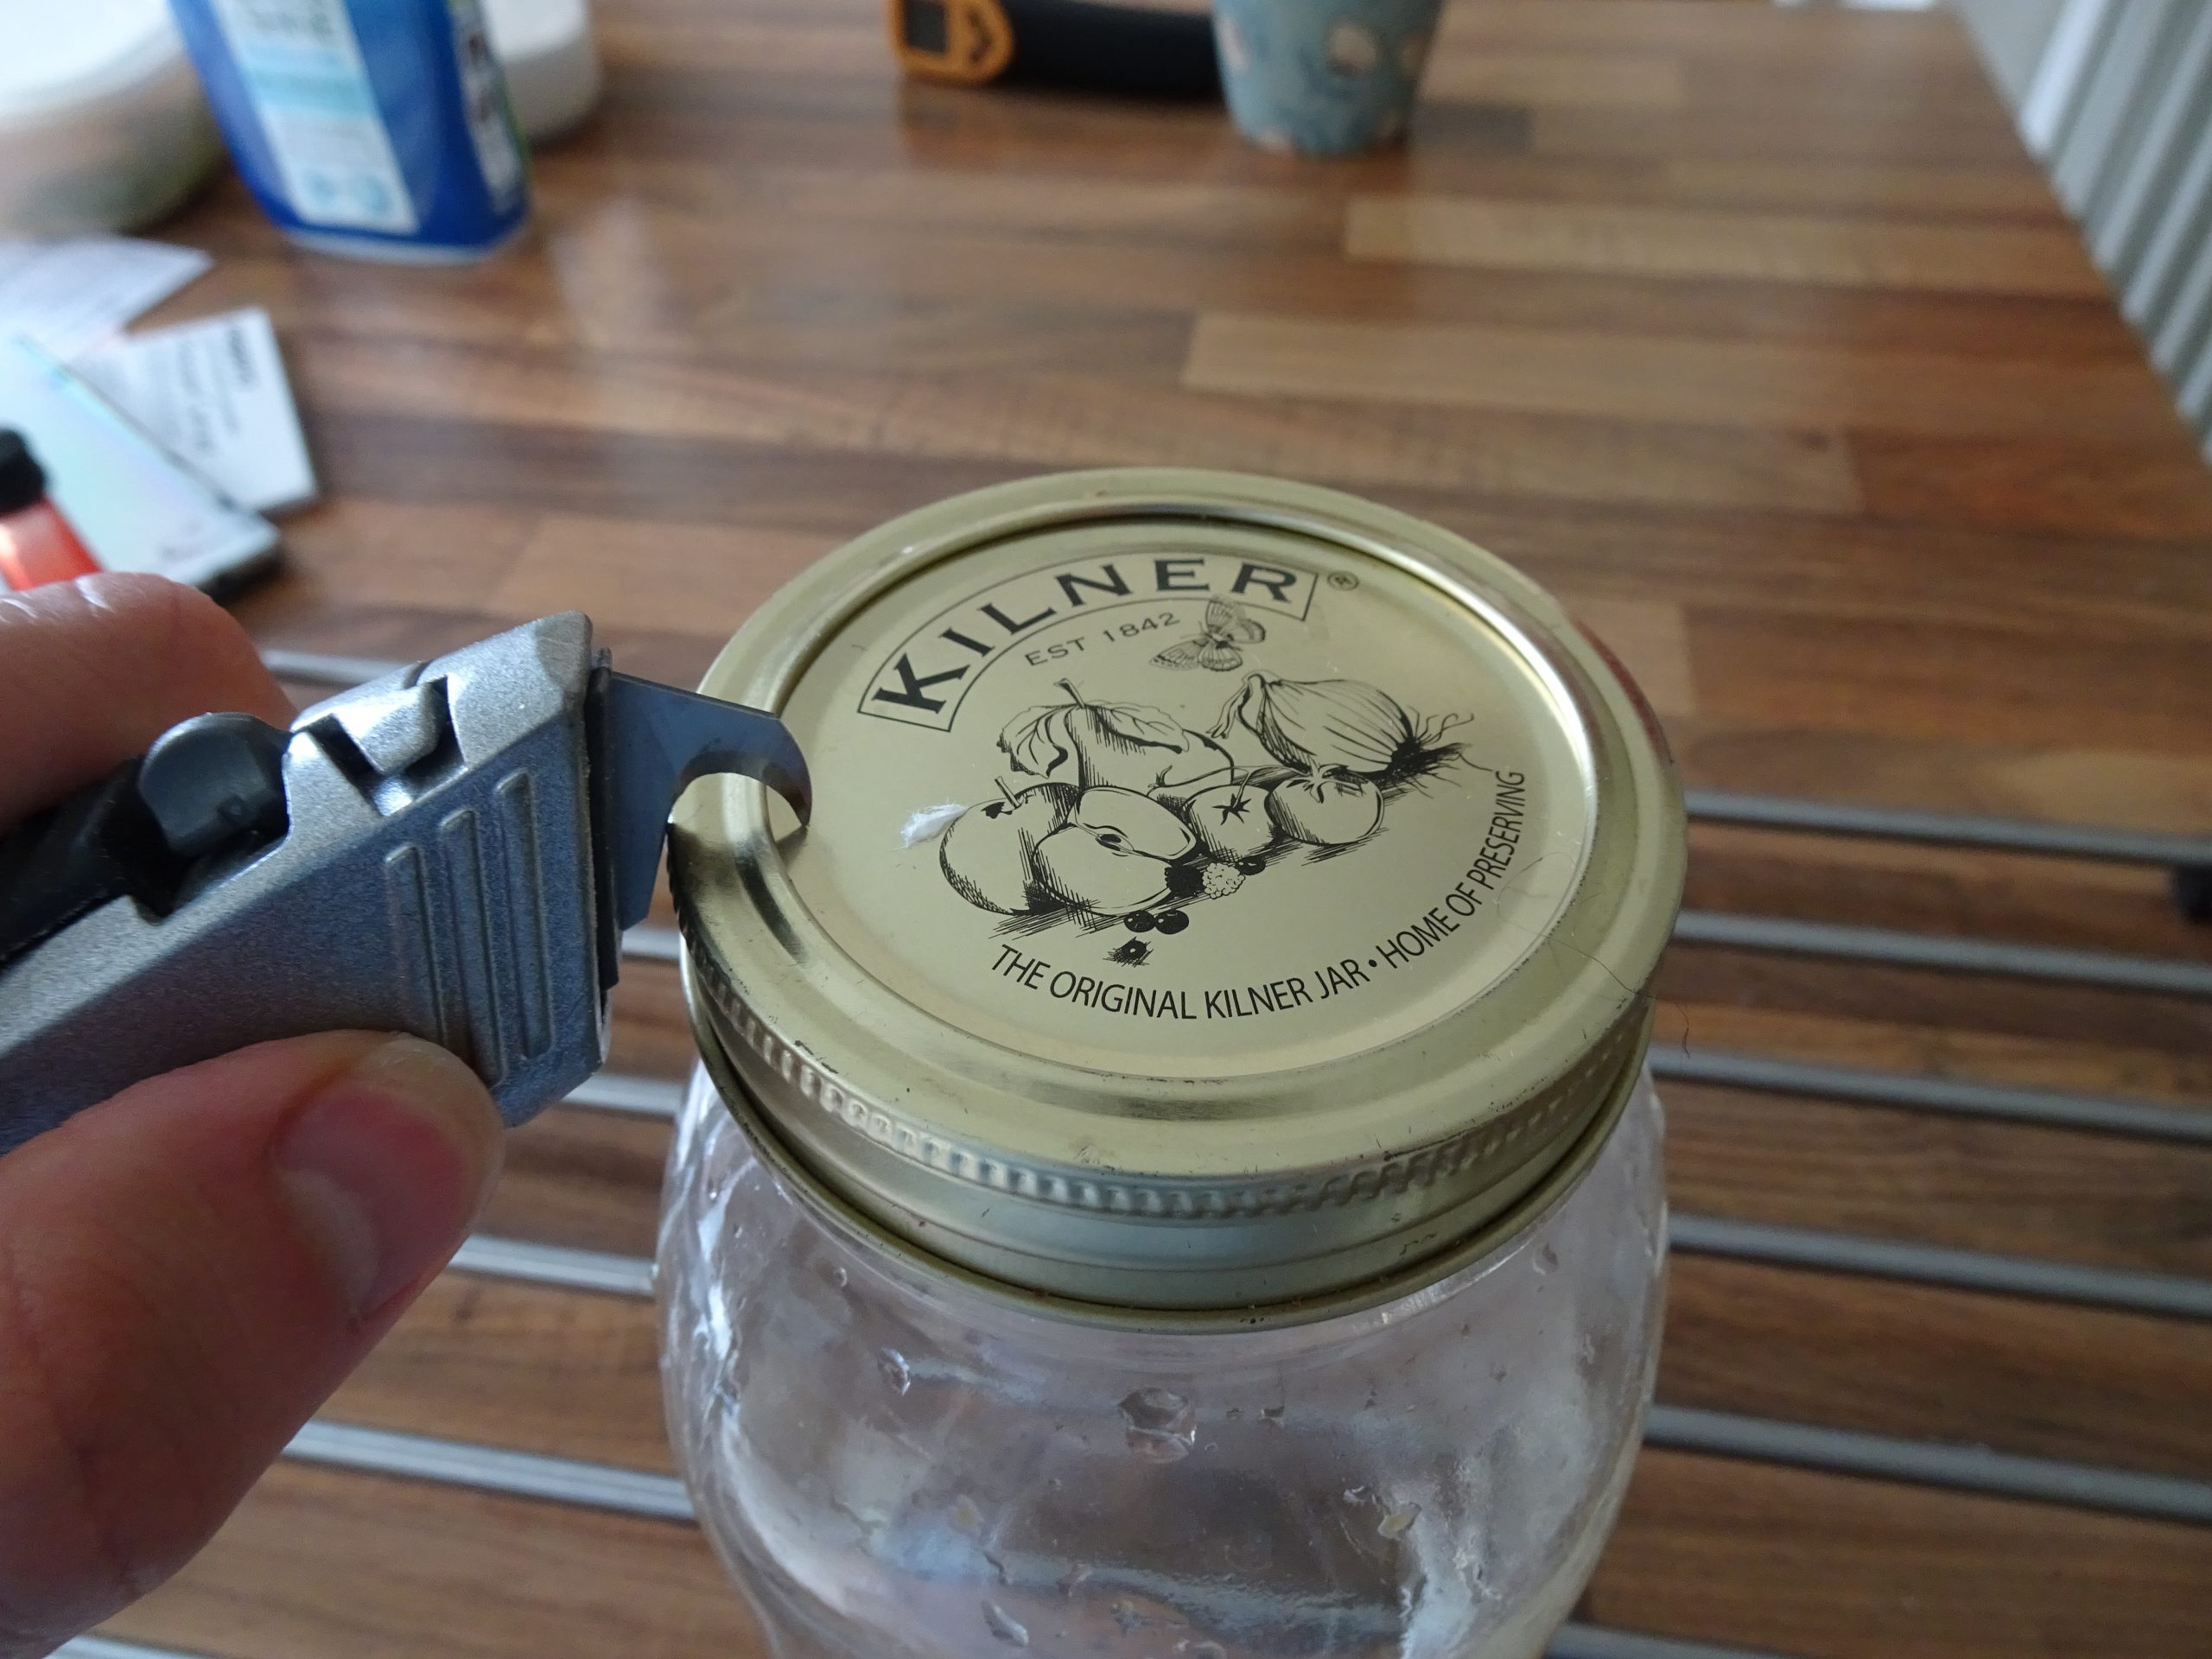 Makng hole in jar lid